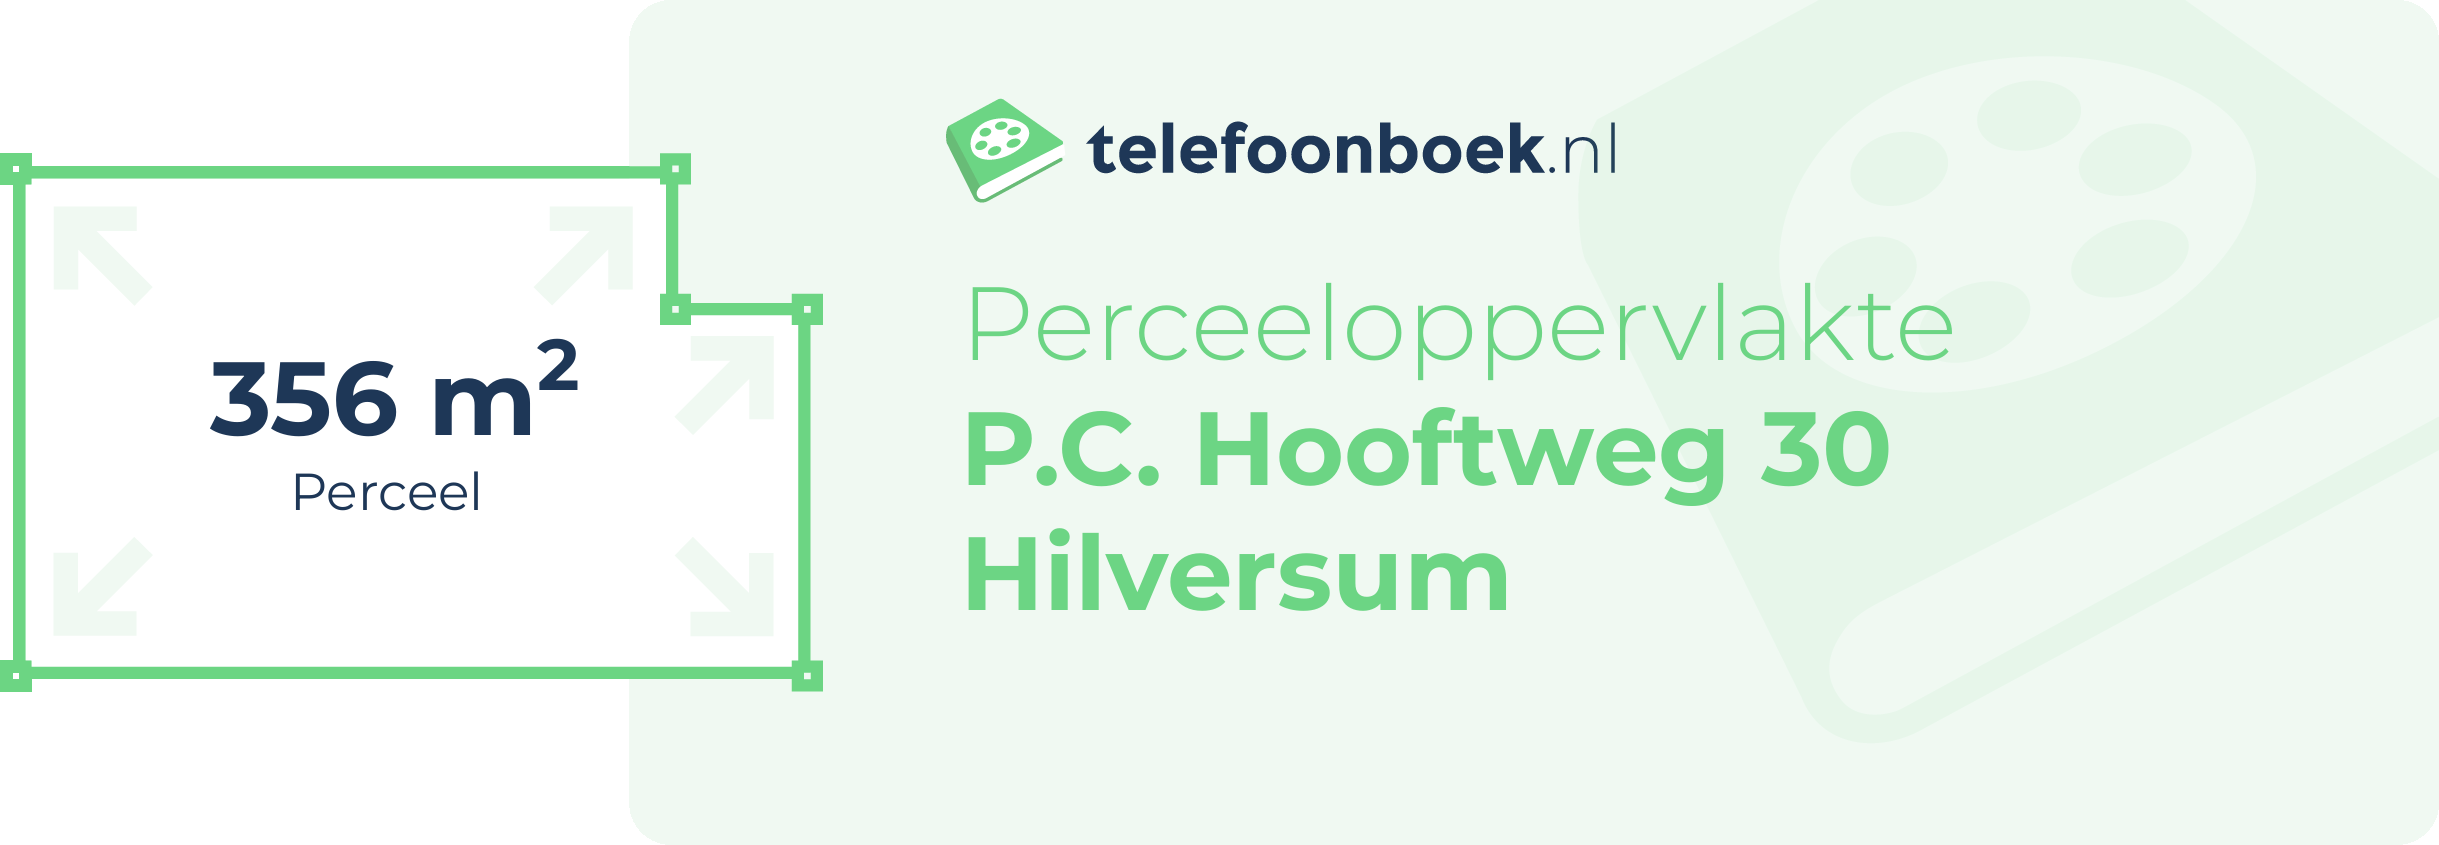 Perceeloppervlakte P.C. Hooftweg 30 Hilversum